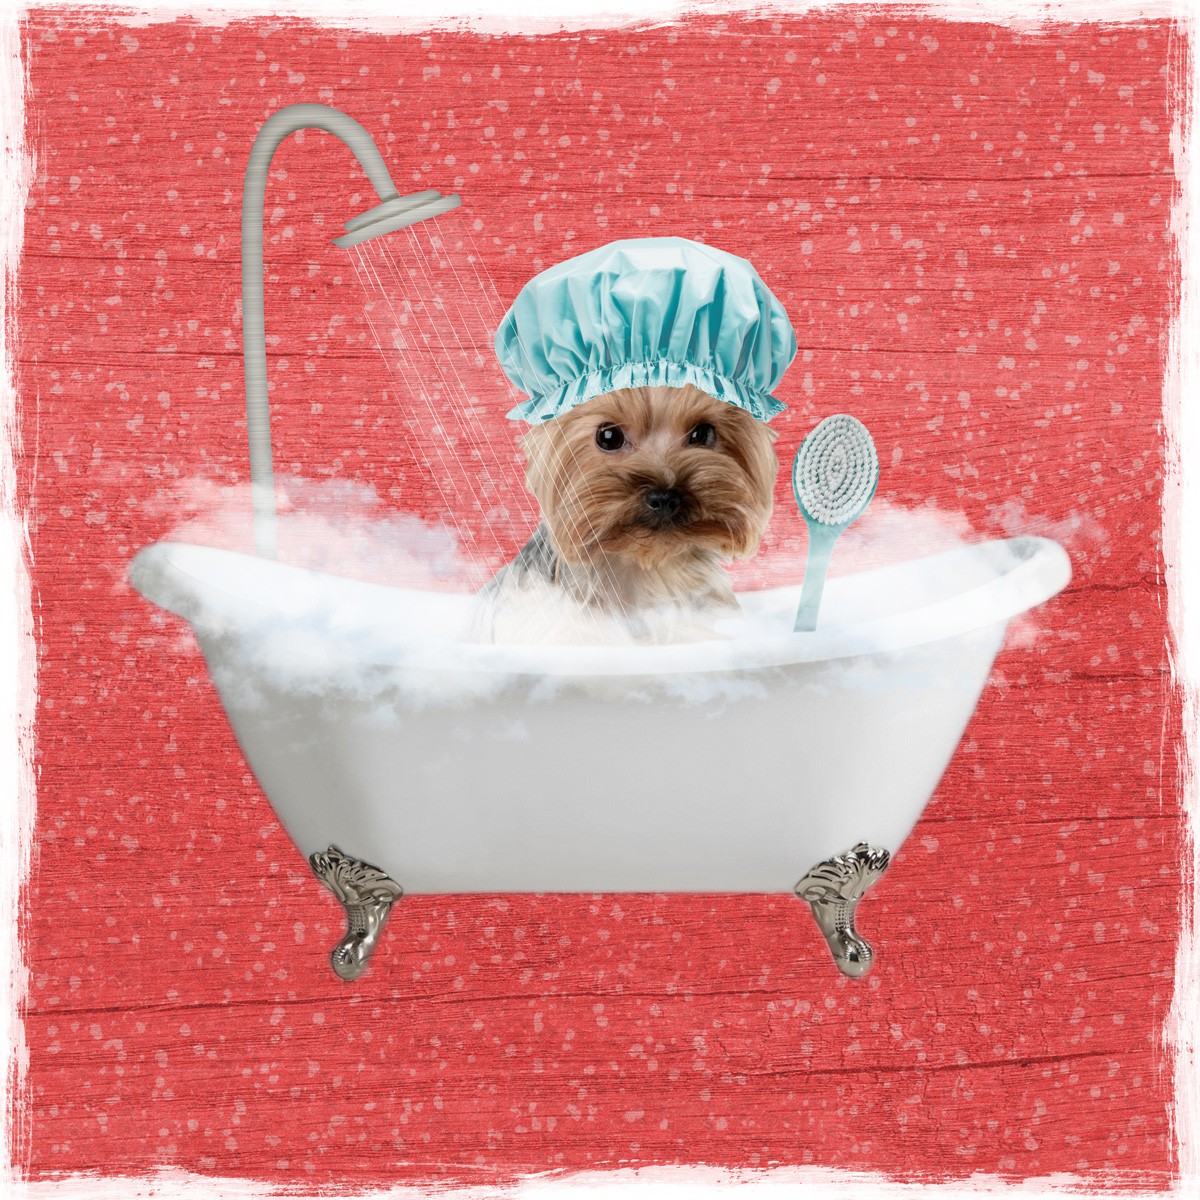 Marcus Prime, Steamy Bath 1 (Hund, Terrier, Badewanne, Dusche, Badeschaum, Badehaube,  witzig, lustig, niedlich, Jugendzimmer, Badezimmer, Grafik, Wunschgröße, bunt)